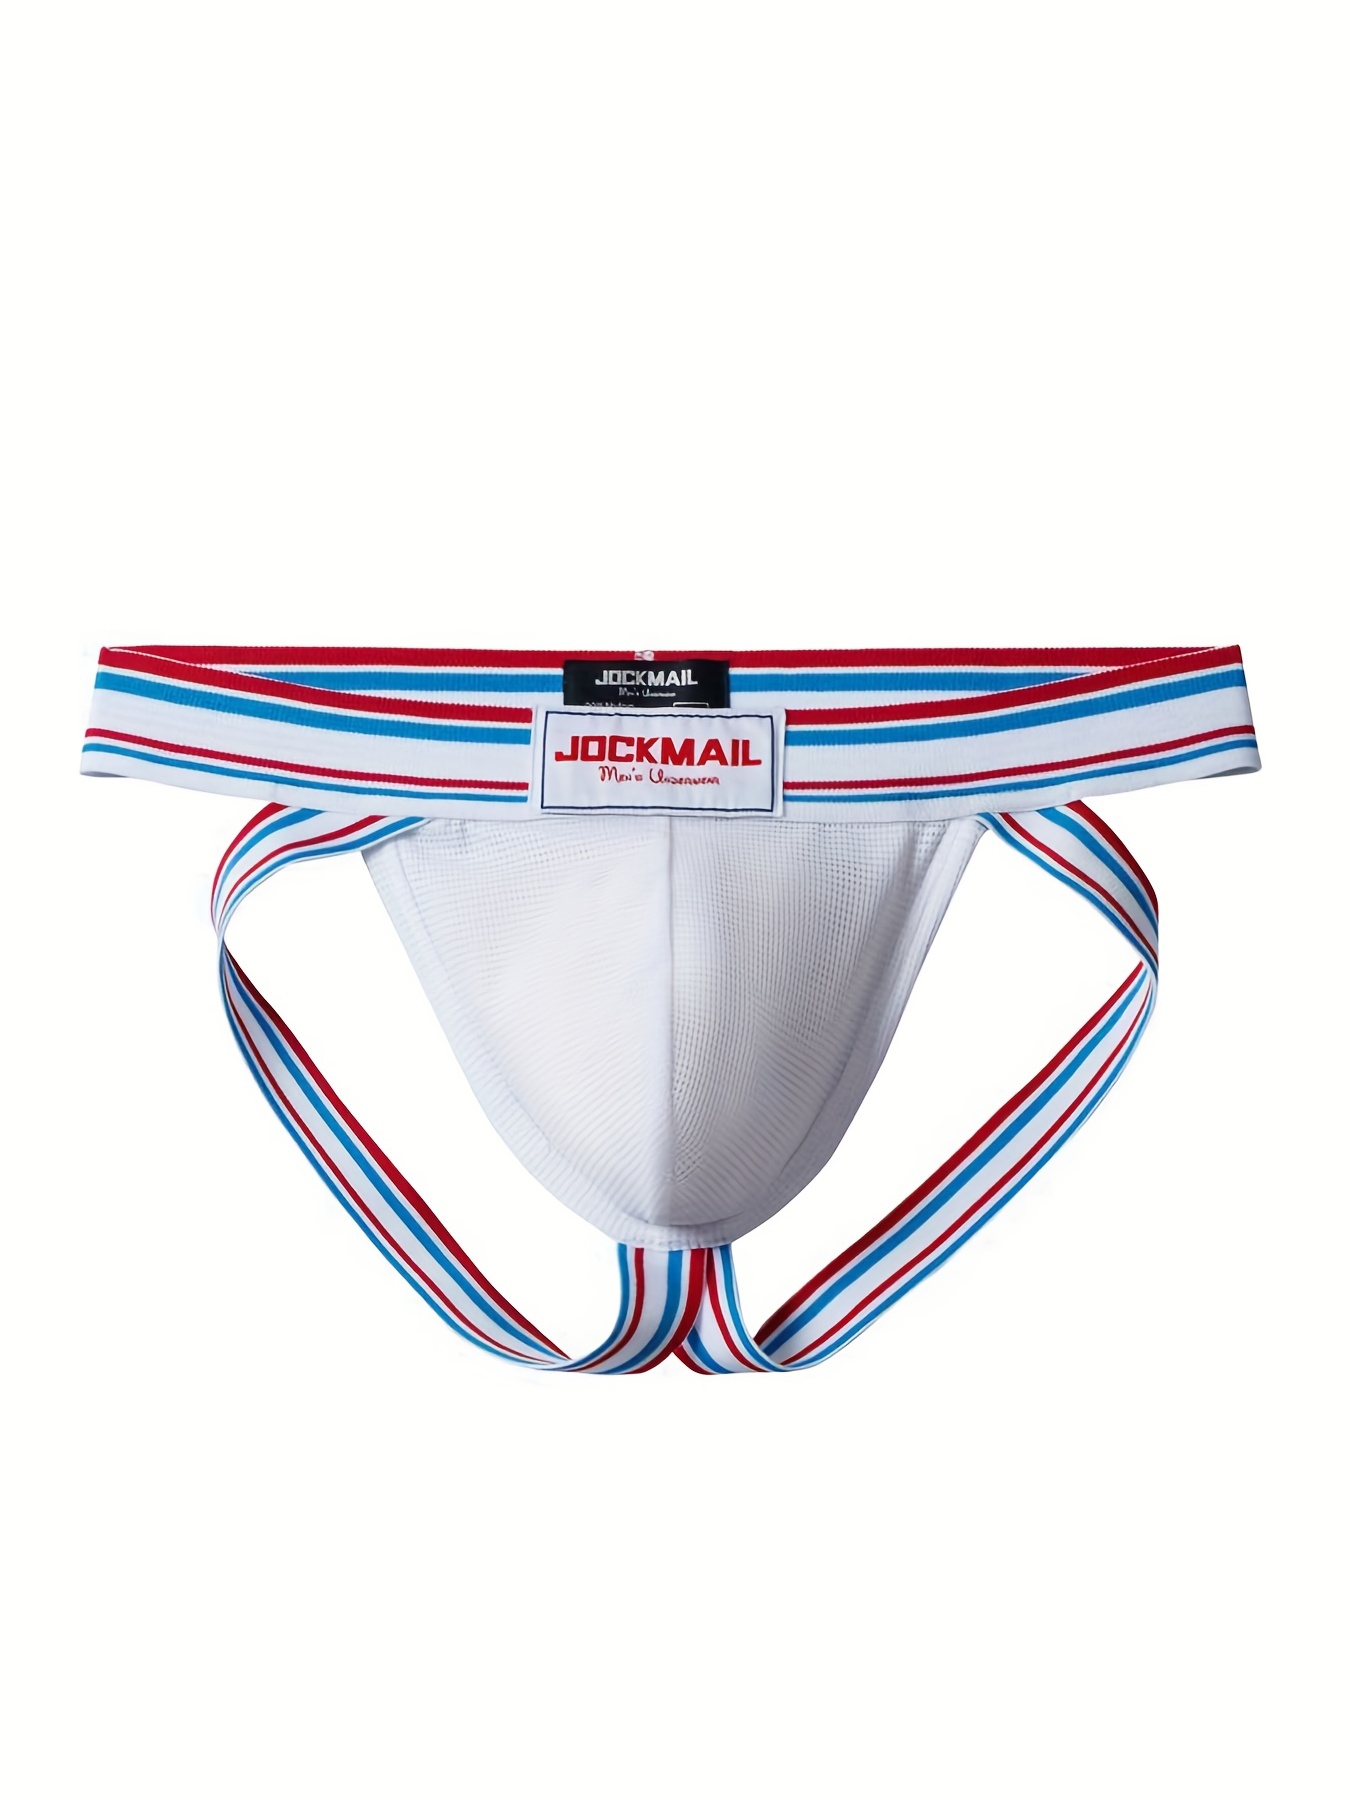 Buy Panteasy Men's Mesh Hole Breathable Jockstrap Underwear Online